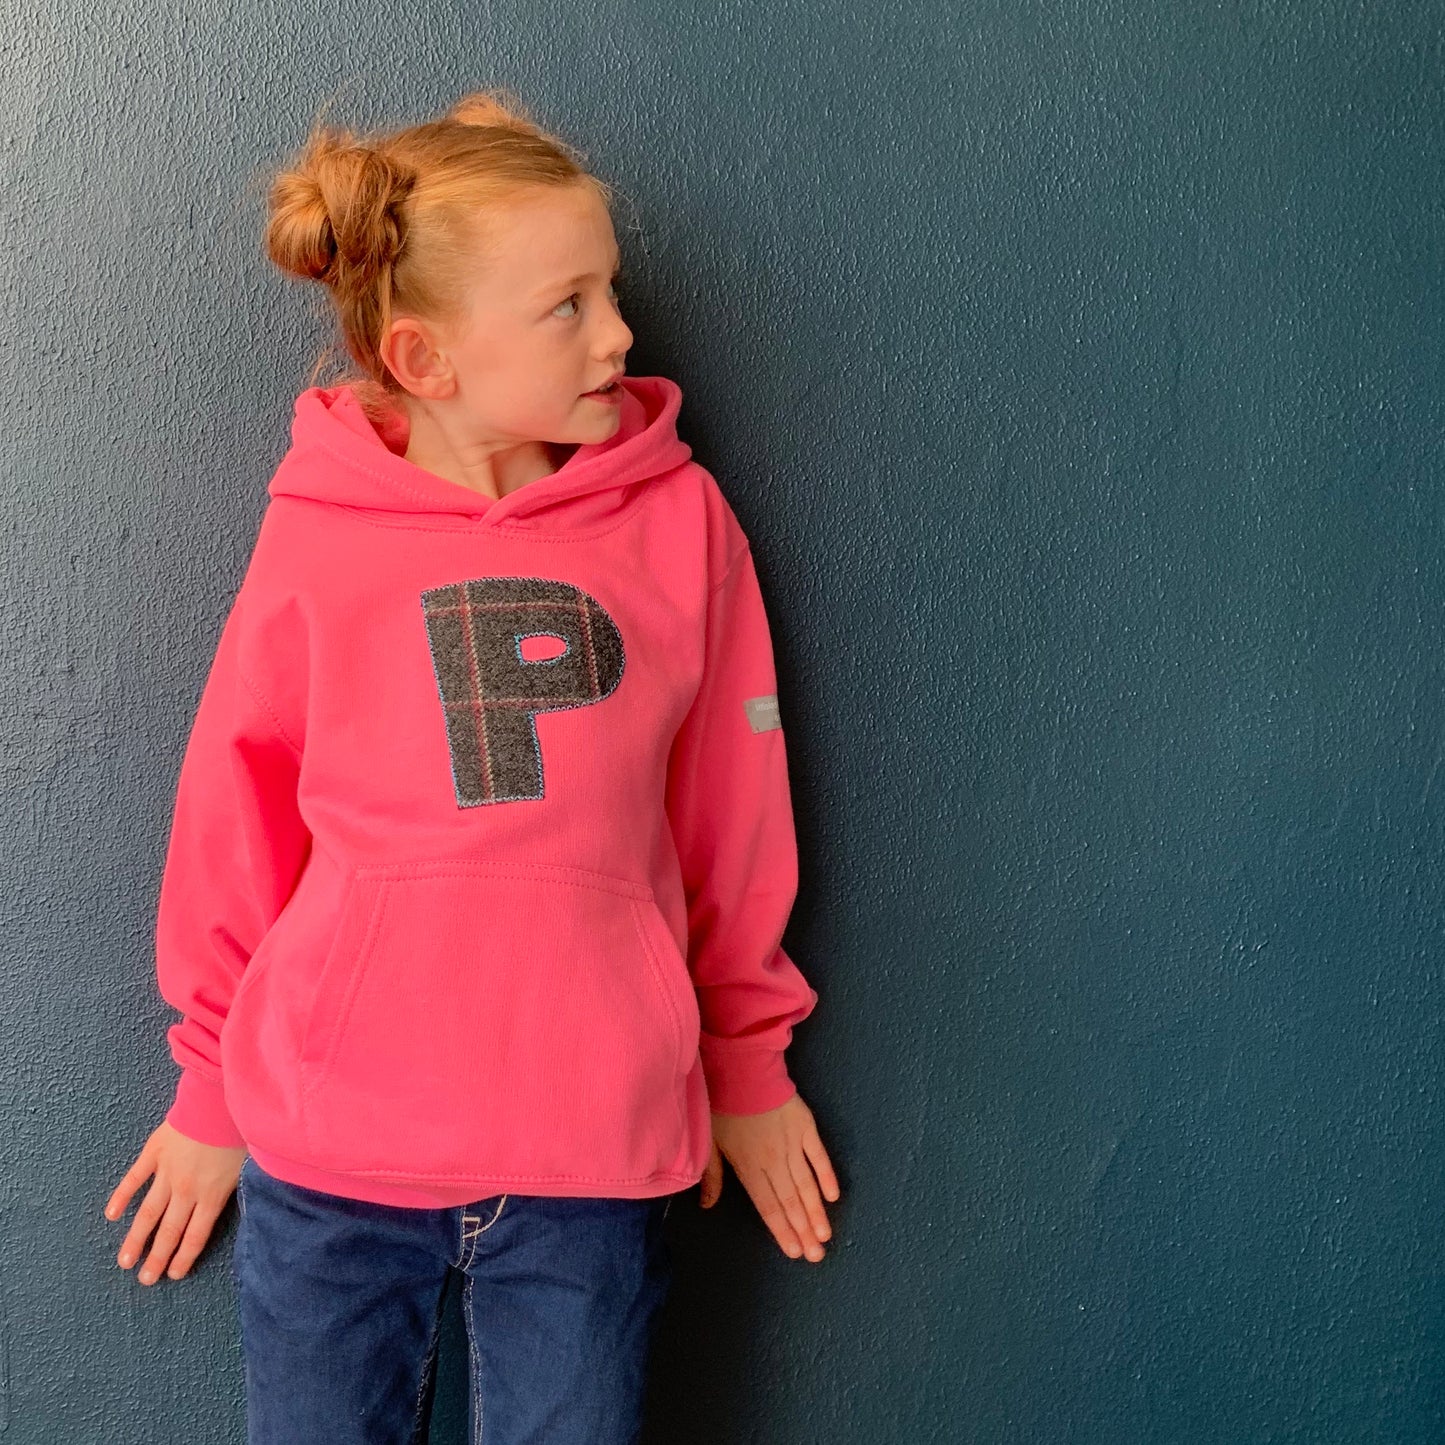  personalised hoodies, boys hoodies, girls hoodie, personalised gifts, design your own hoody - pink personalised initial hoodies